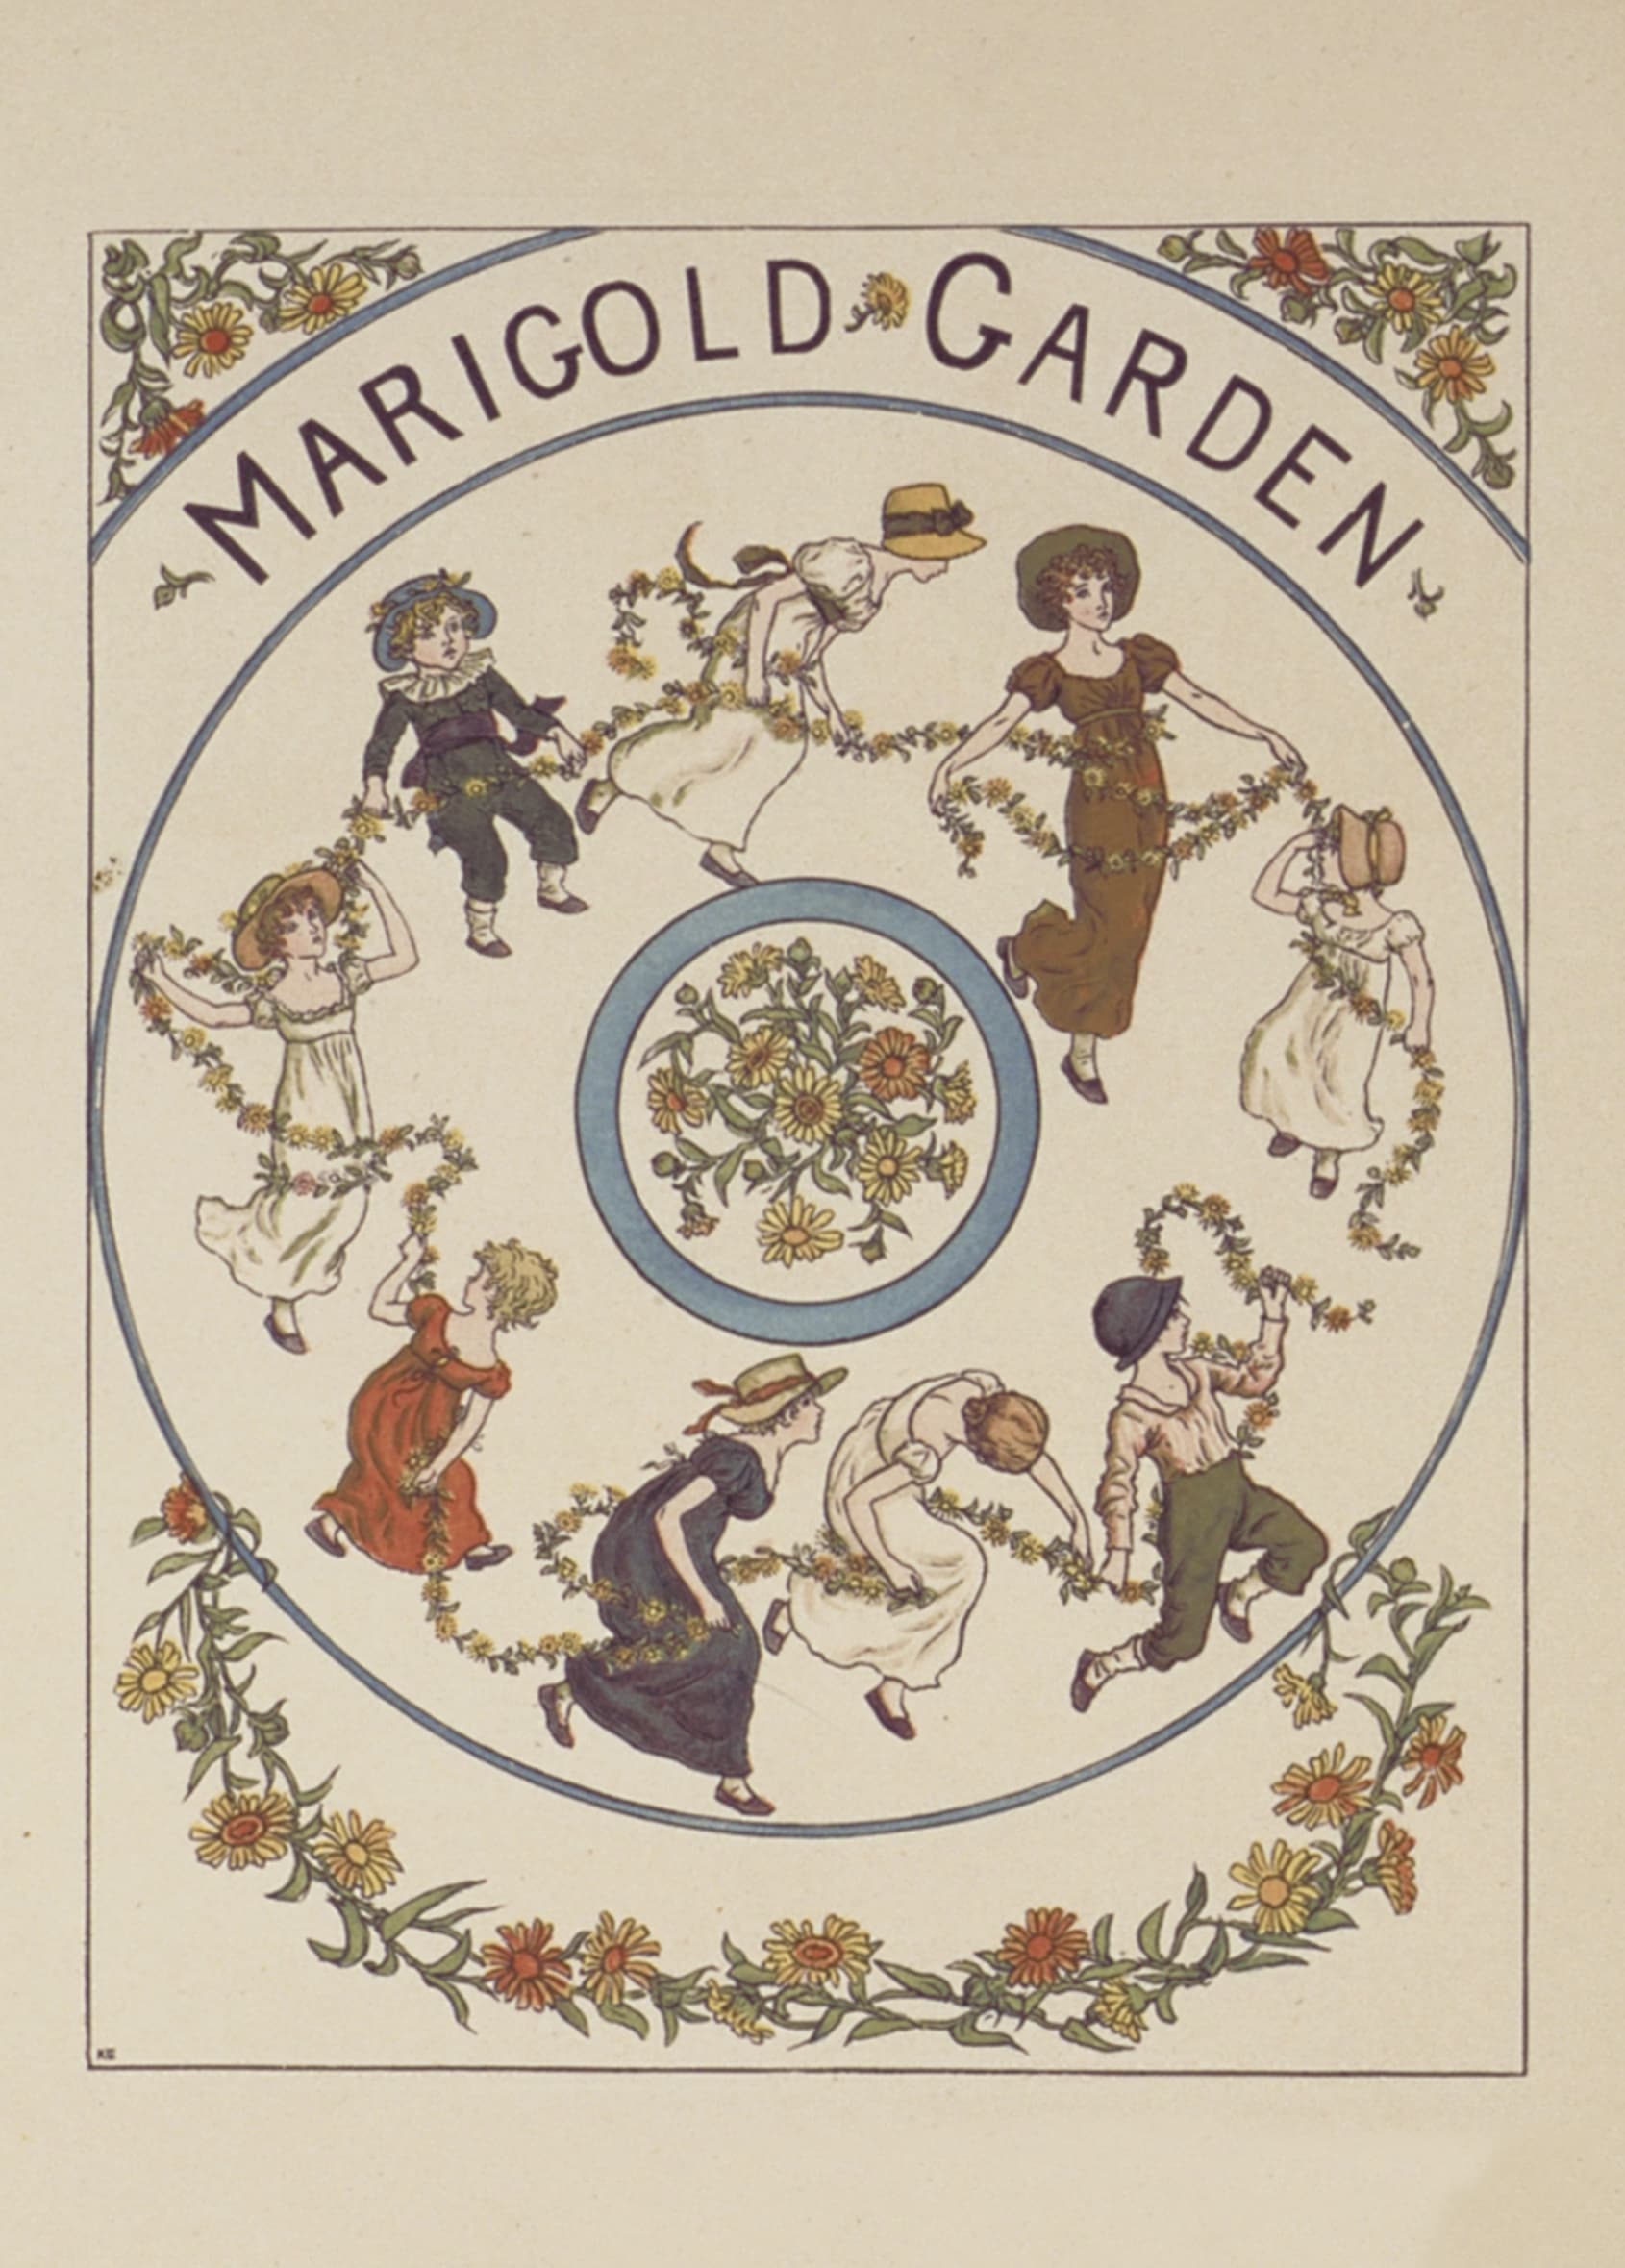 Illustration 1 from “A Marigold Garden”